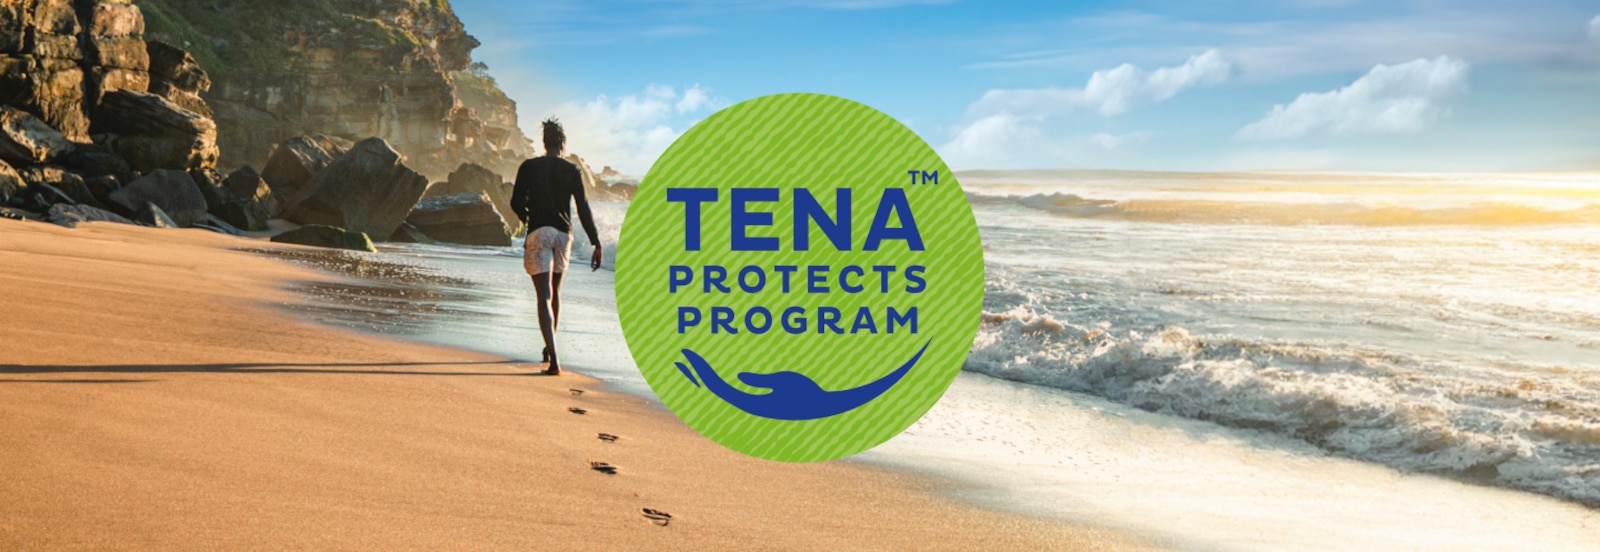 TENA Protects Programのロゴと、遠くの崖に向かって日差しの強いビーチを歩く男性の写真が重なっている。